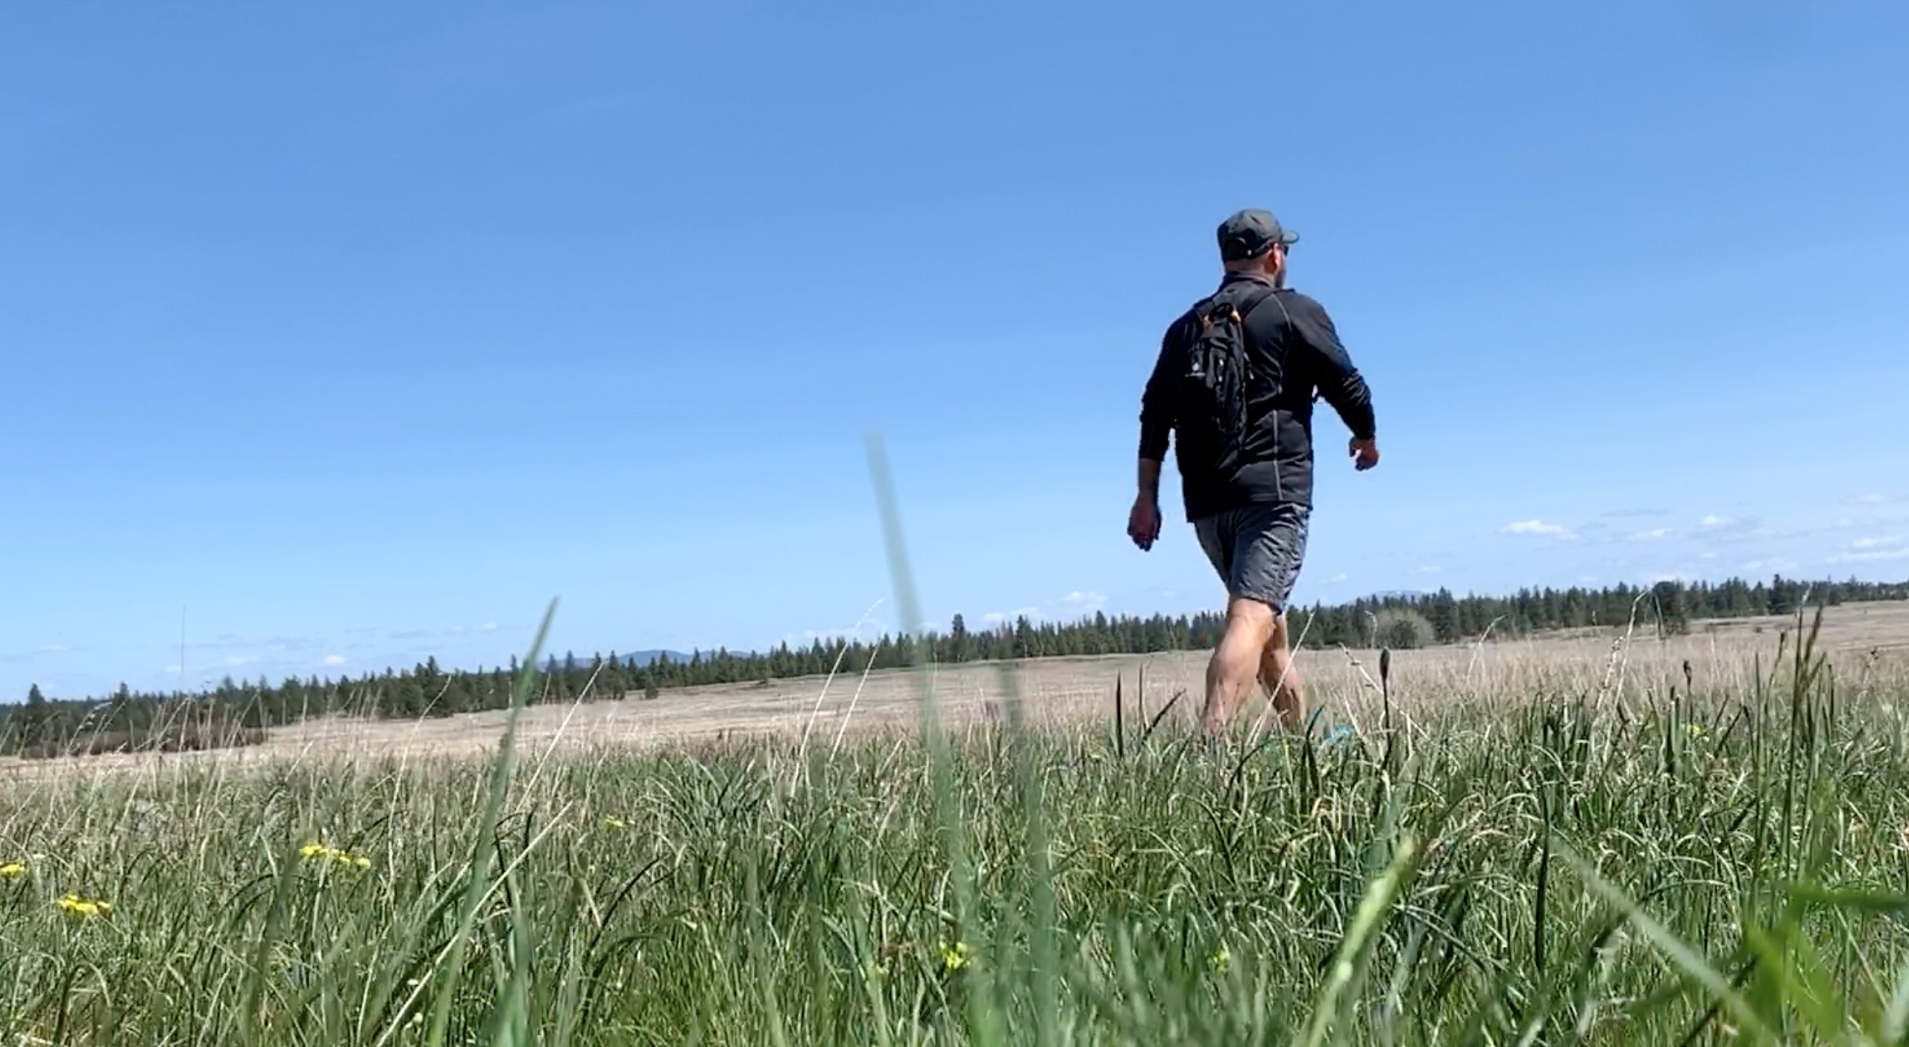 A man walking through a grass field.